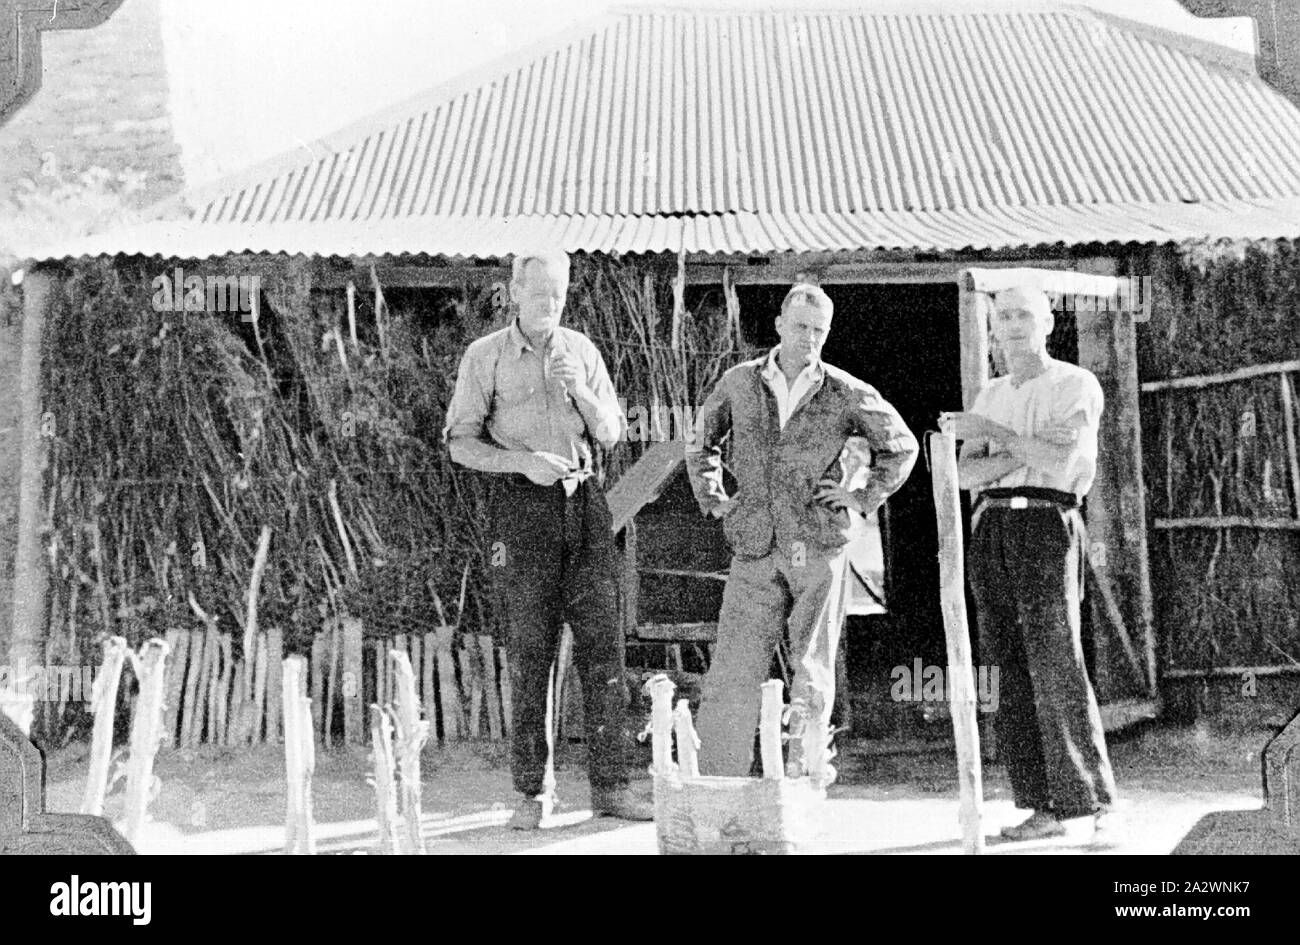 Negative - Männer am Hut, Henbury, Northern Territory, 1937, drei Männer außerhalb einer Hütte mit Wellblechdach und Pinsel Wände Stockfoto